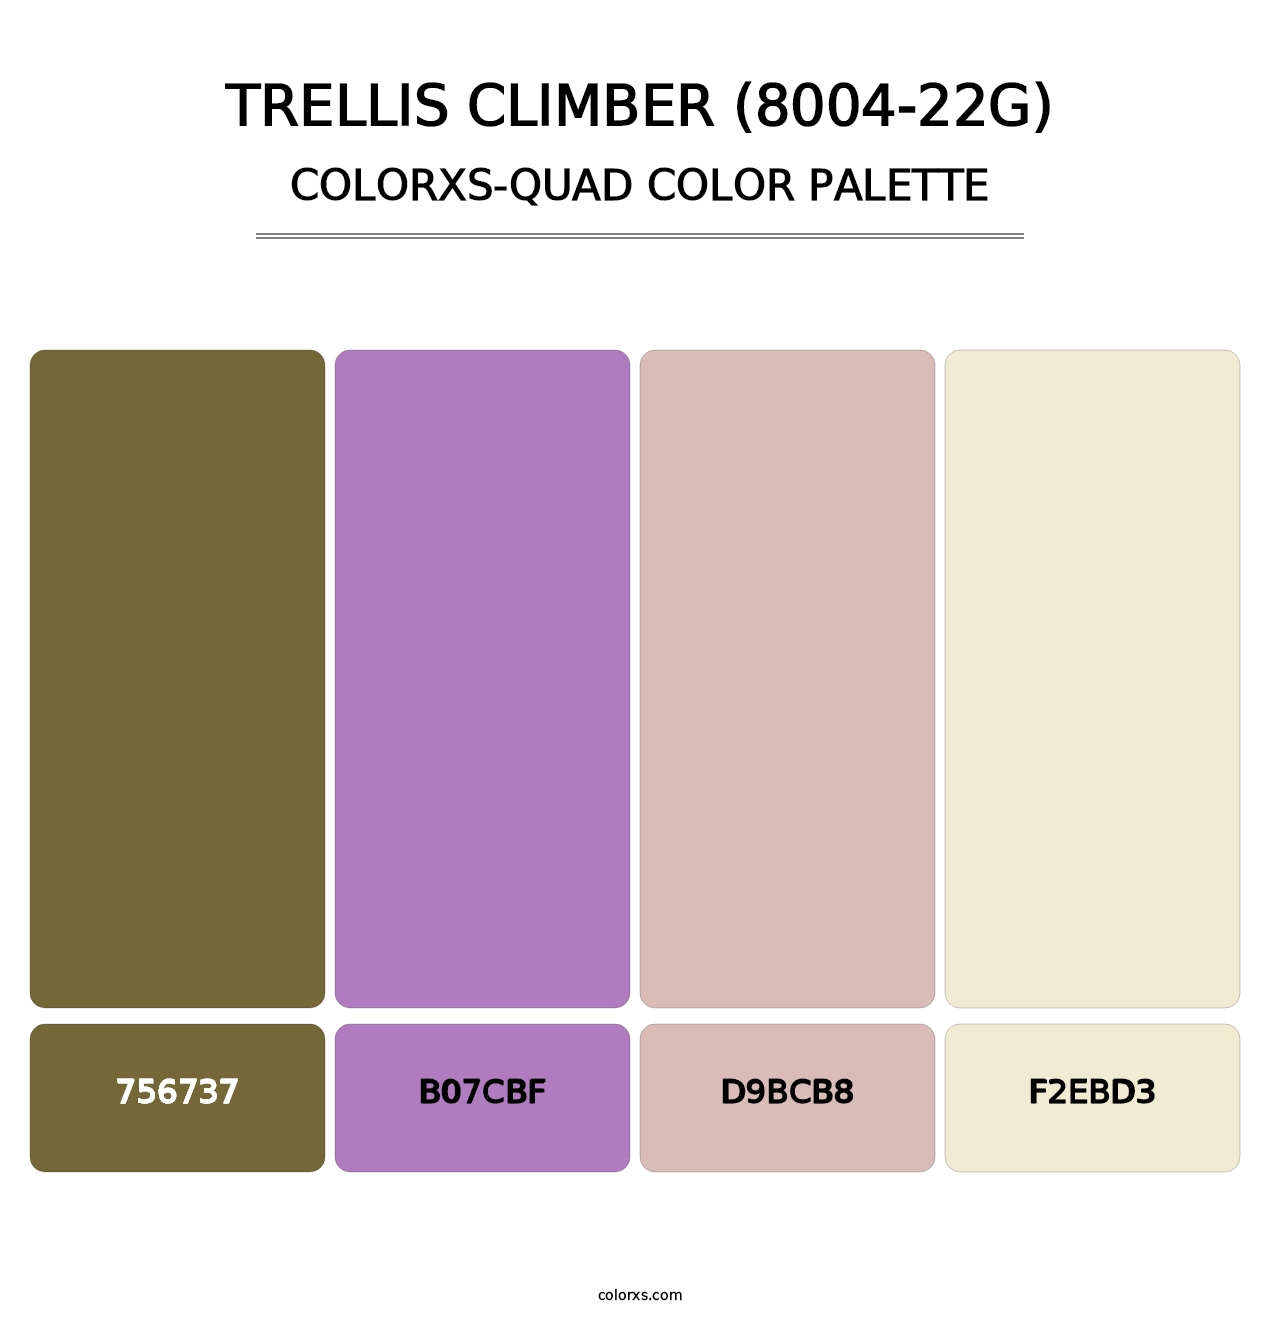 Trellis Climber (8004-22G) - Colorxs Quad Palette